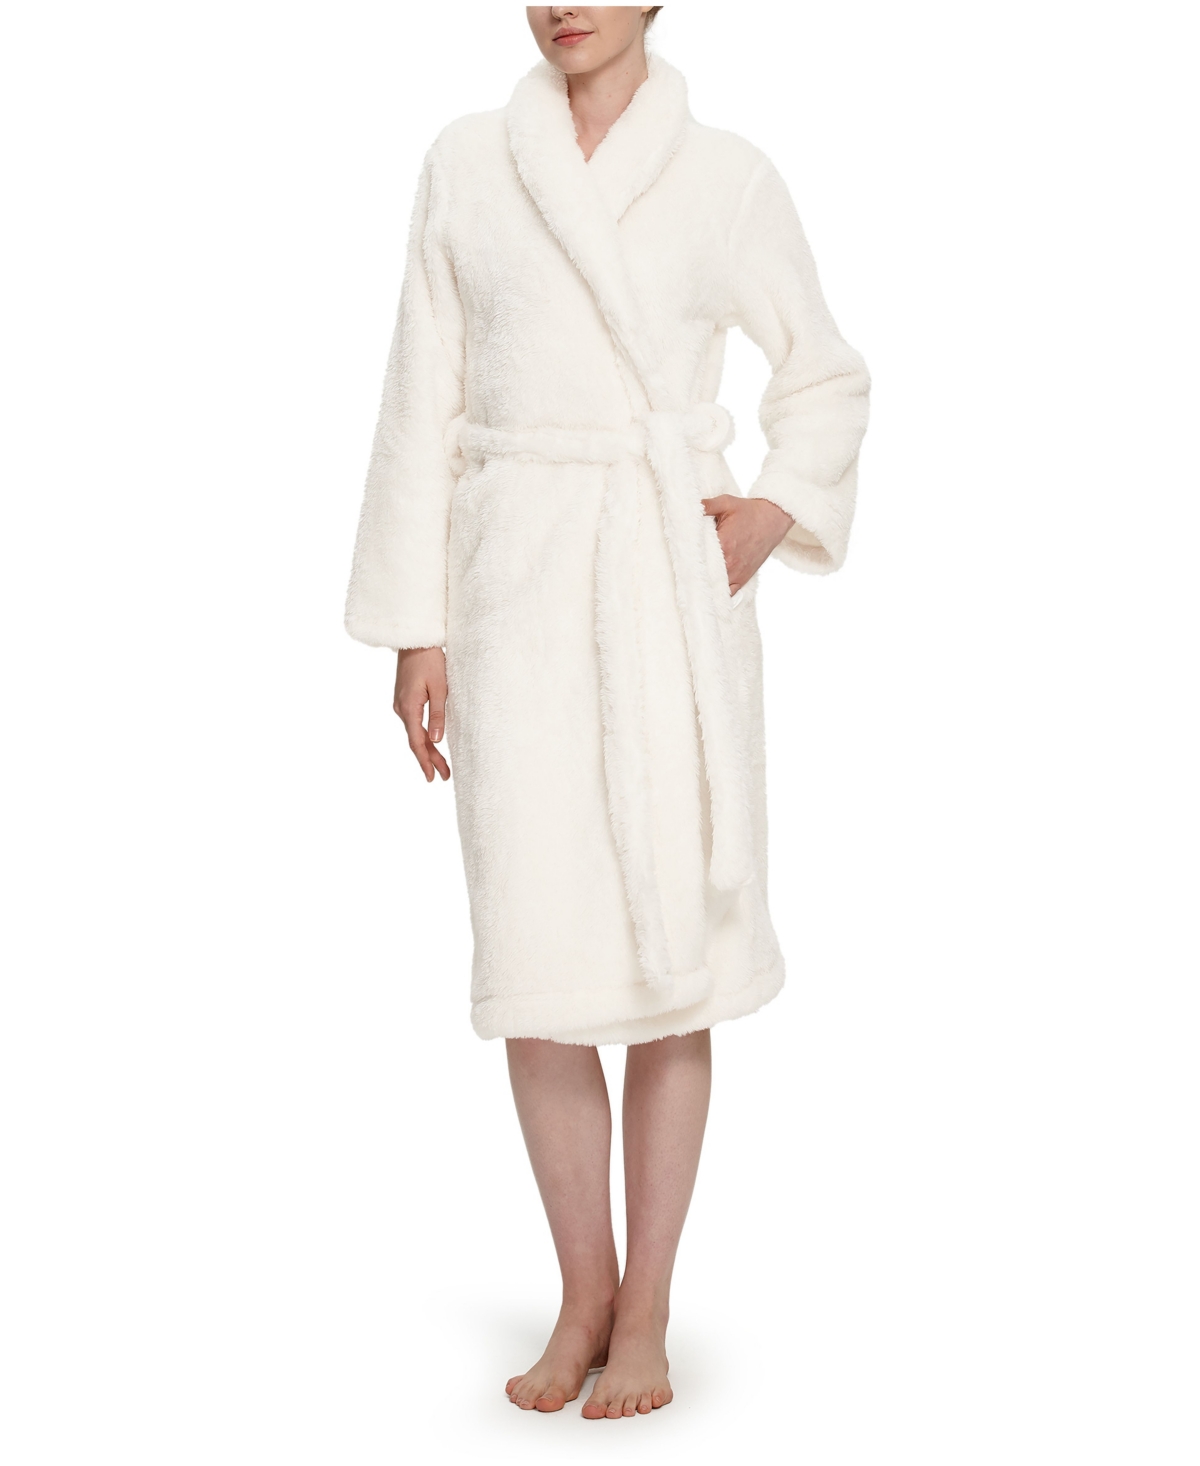 Berkshire Women's Extra-Fluffy Shawl Cardigan Robe